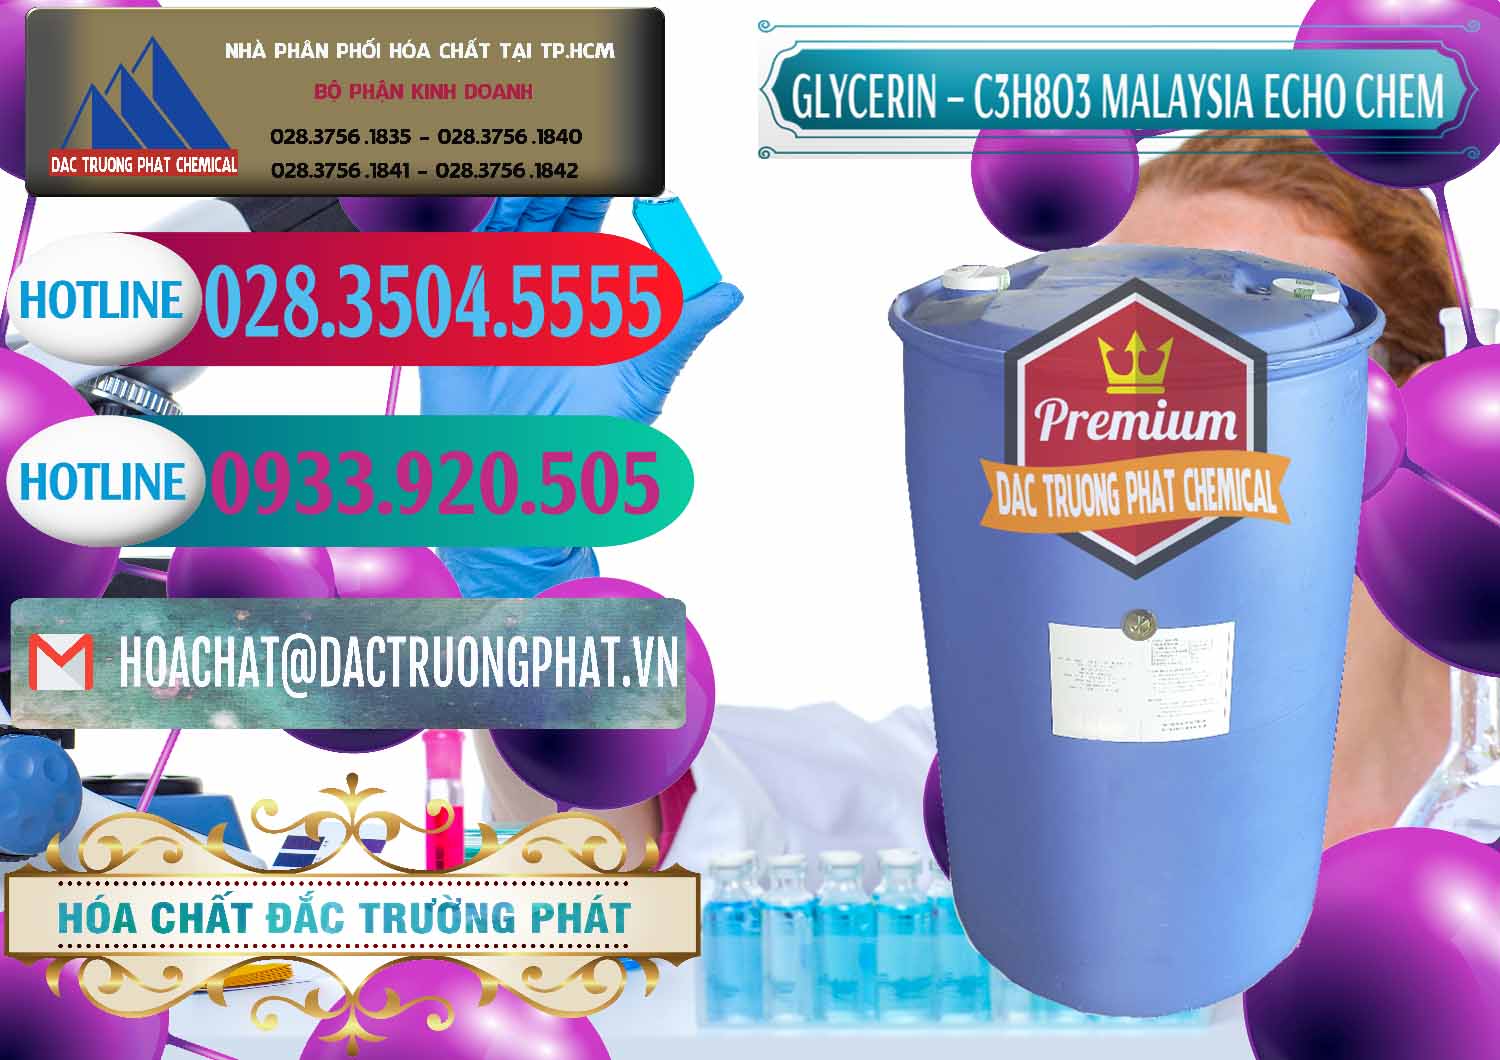 Nơi chuyên nhập khẩu & bán Glycerin – C3H8O3 99.7% Echo Chem Malaysia - 0273 - Công ty nhập khẩu _ cung cấp hóa chất tại TP.HCM - truongphat.vn